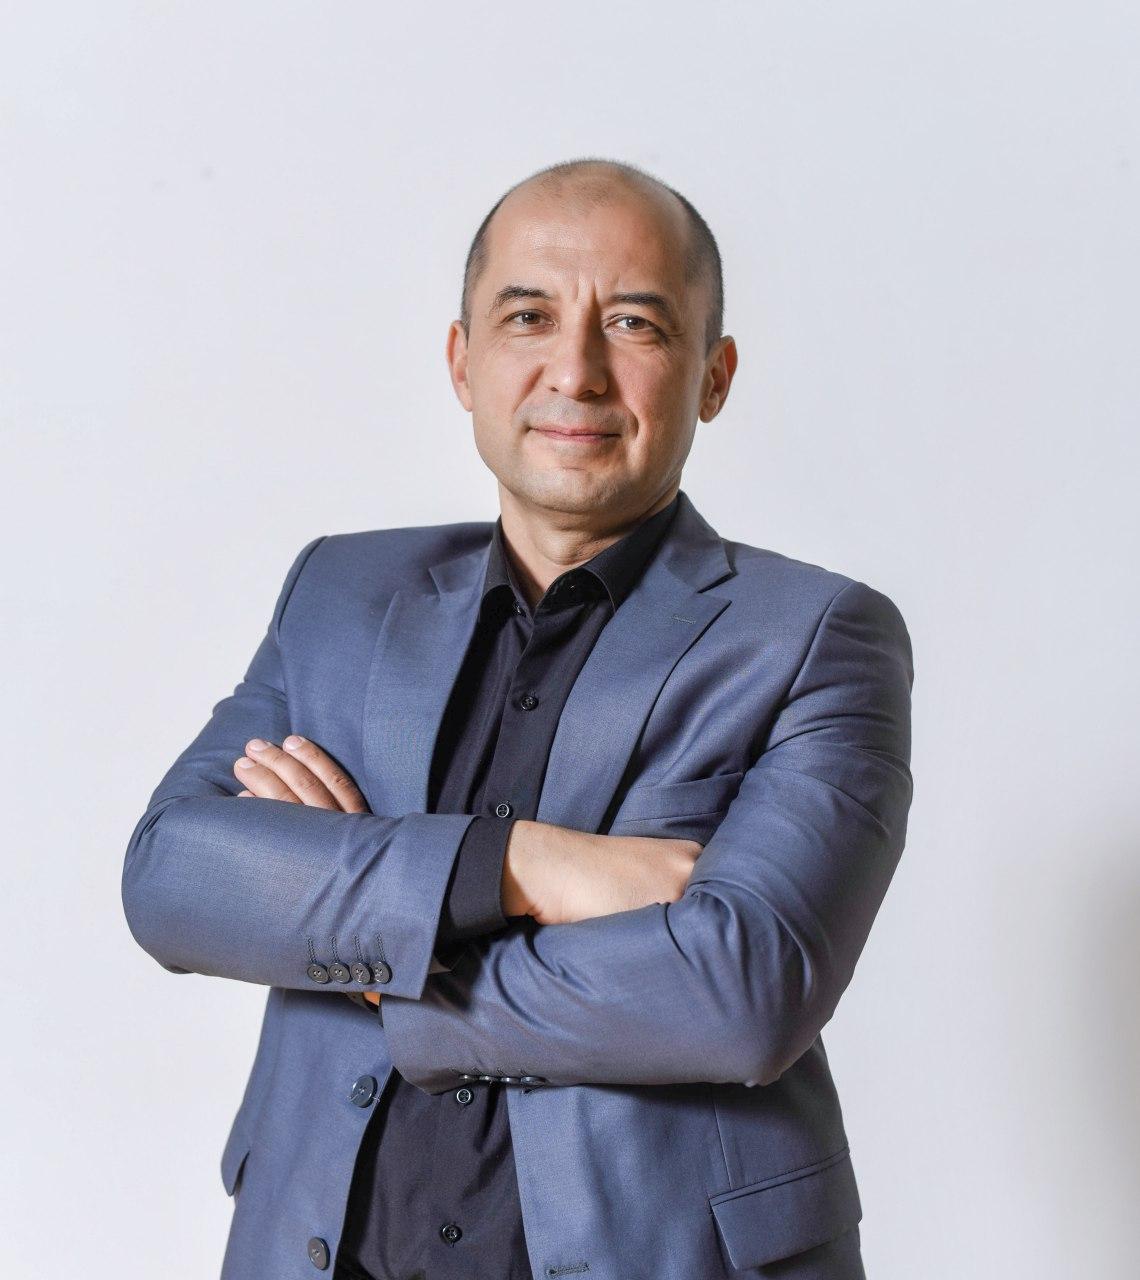 «Бизнес недоинформирован», – Диёр Мирзаахмедов: о том, как включить мозги и стать лидером своей отрасли